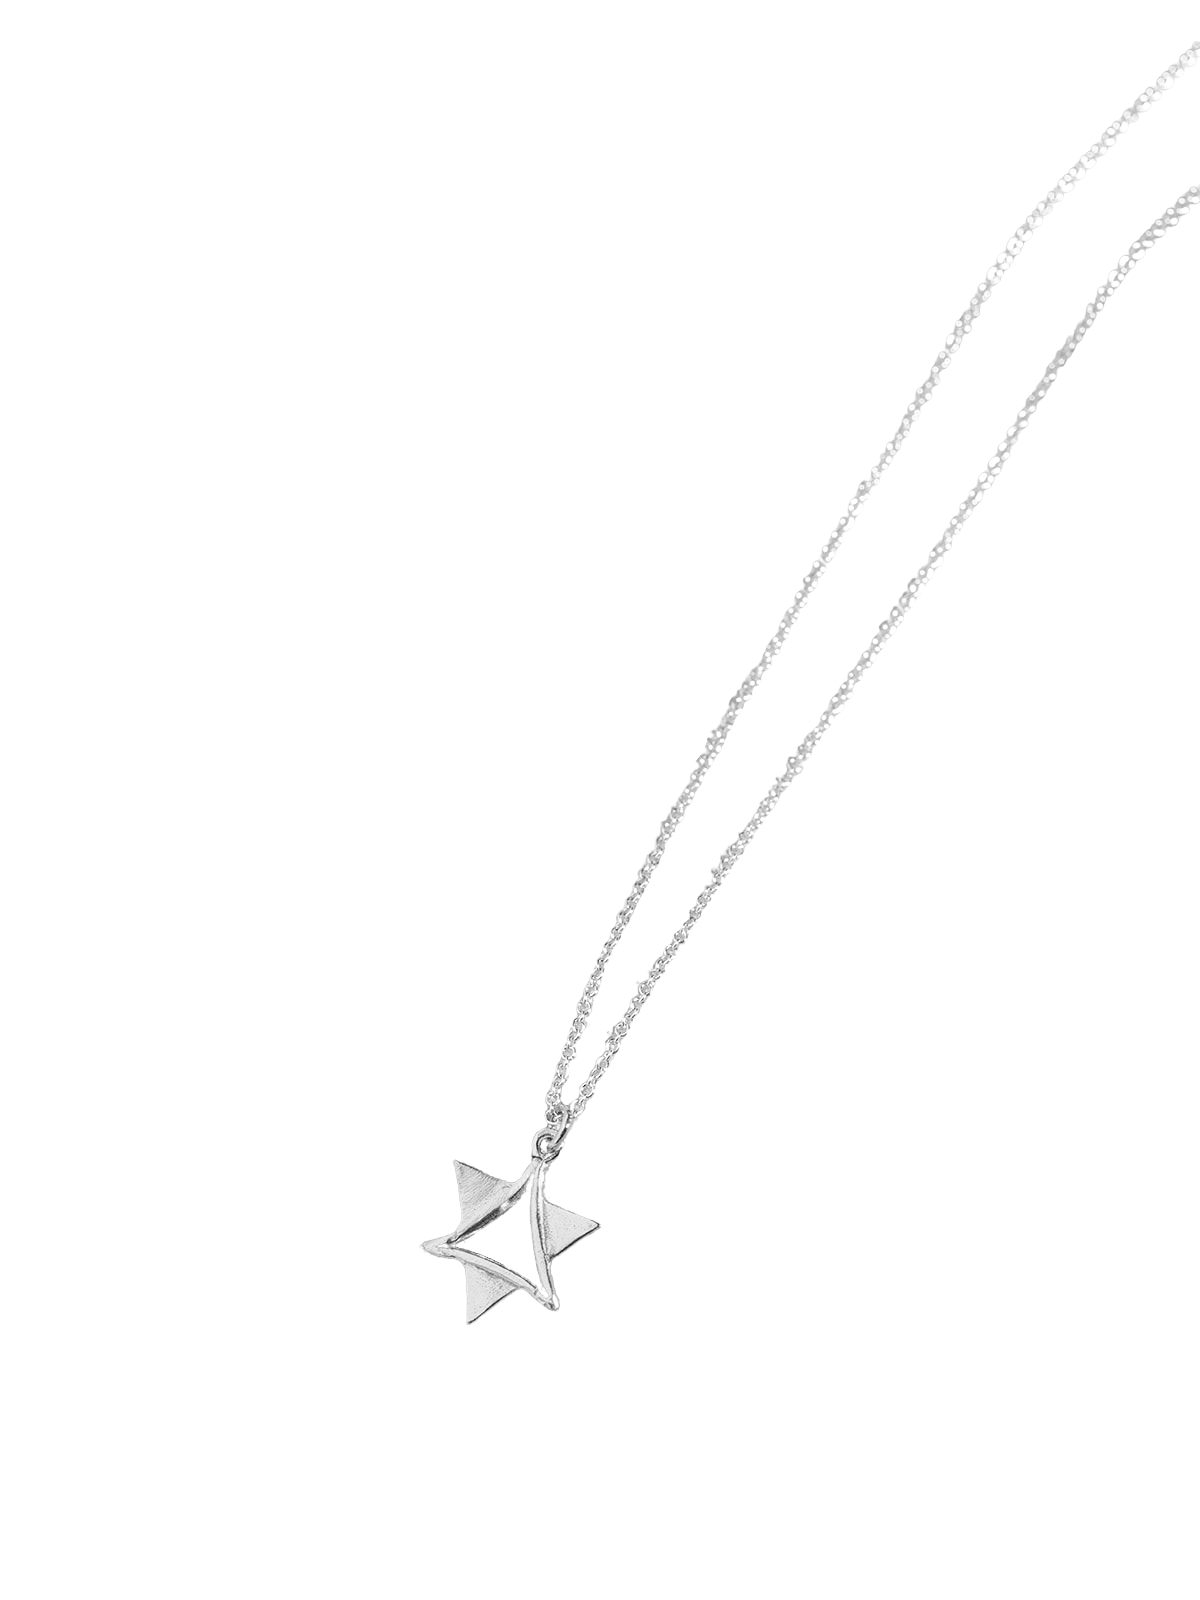 Star of David Necklace in 14K 14K White Gold / 42 cm (16.5)